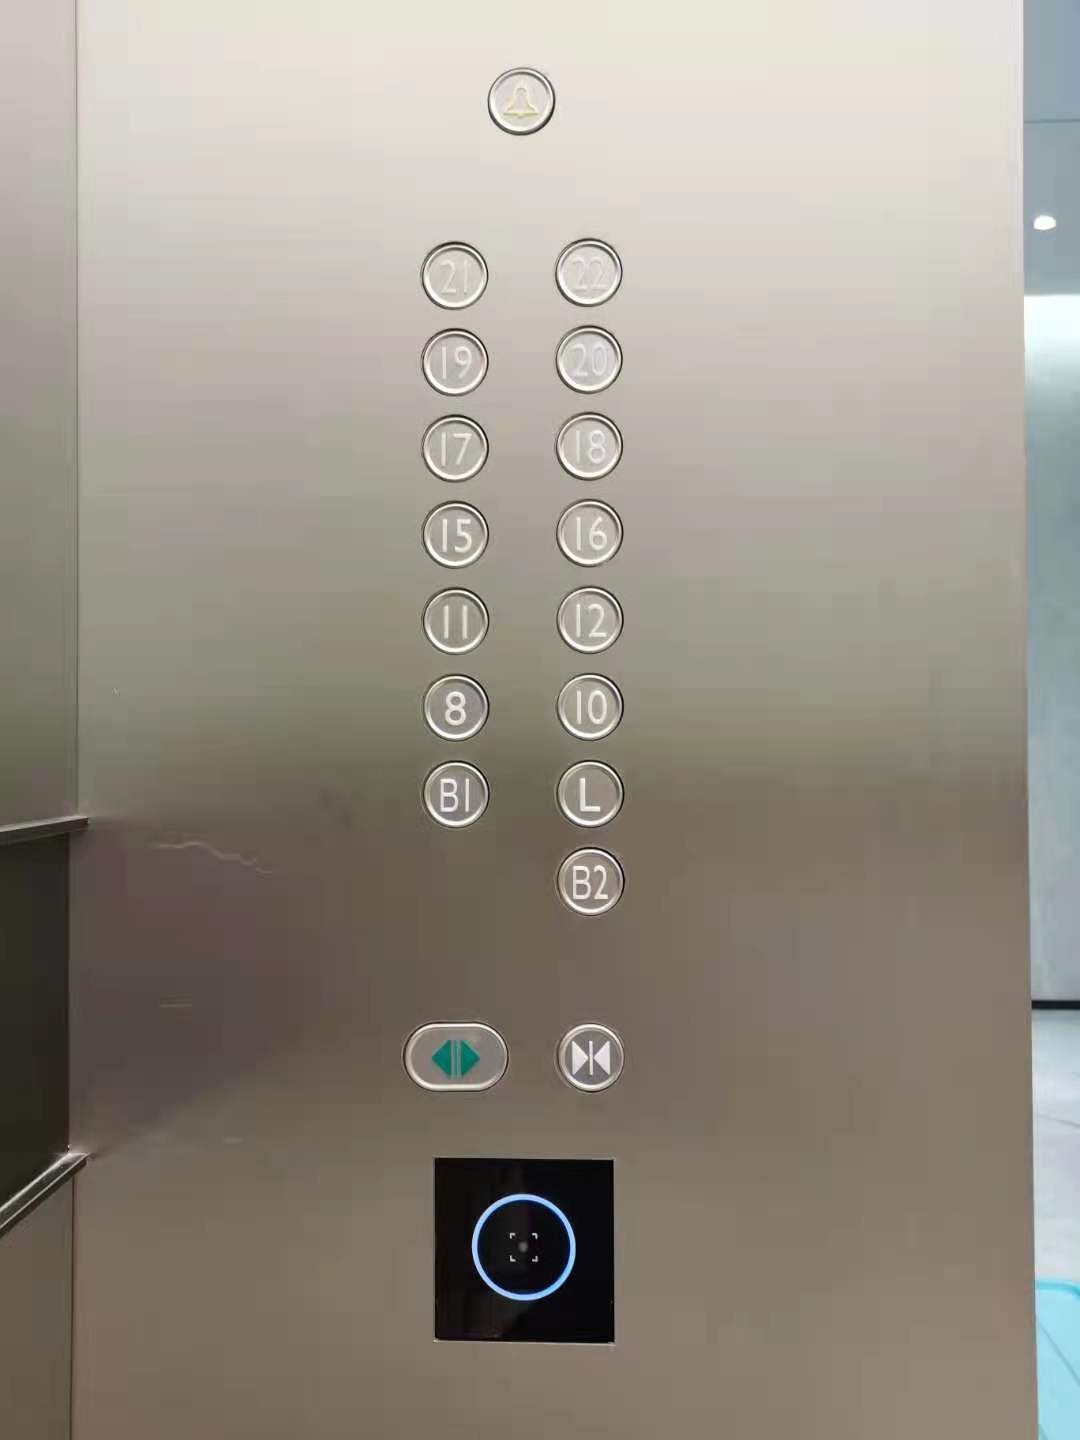 二维码加IC卡电梯控制系统